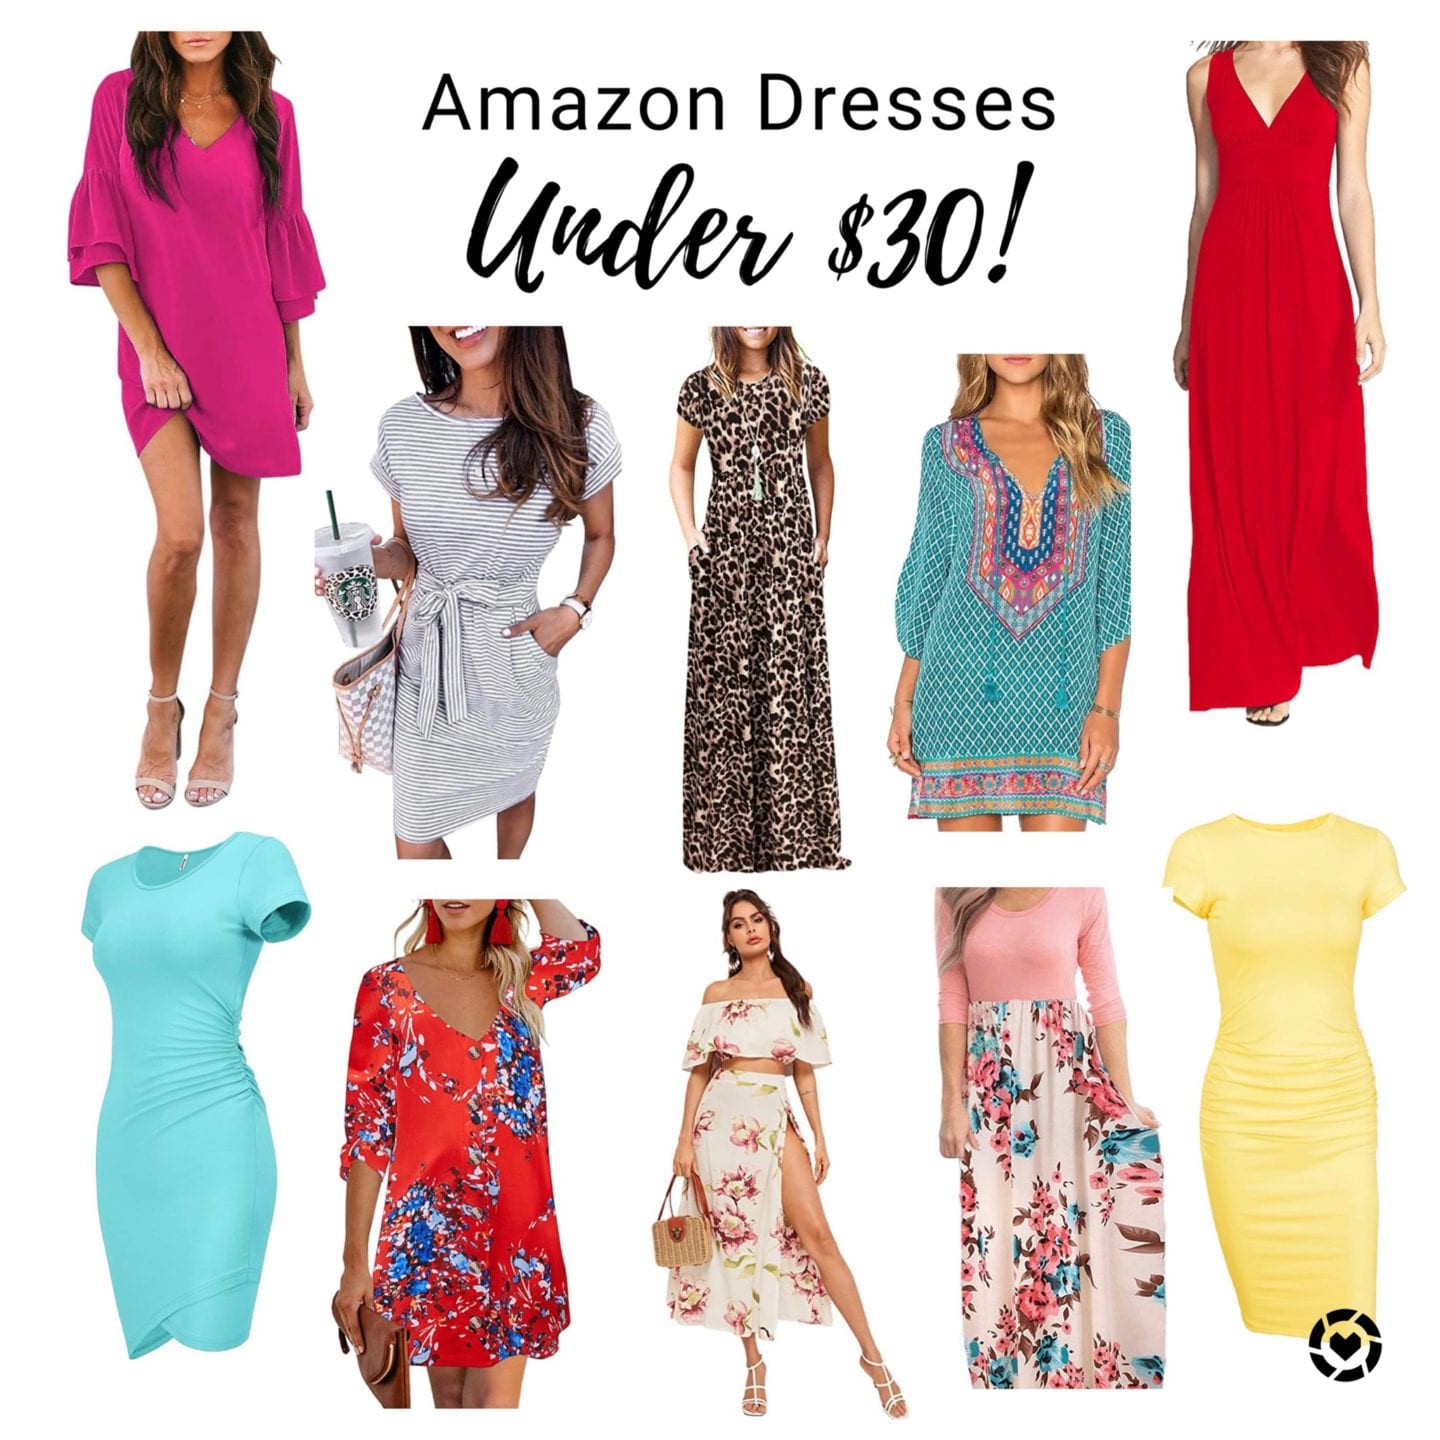 Amazon Dresses Under $30